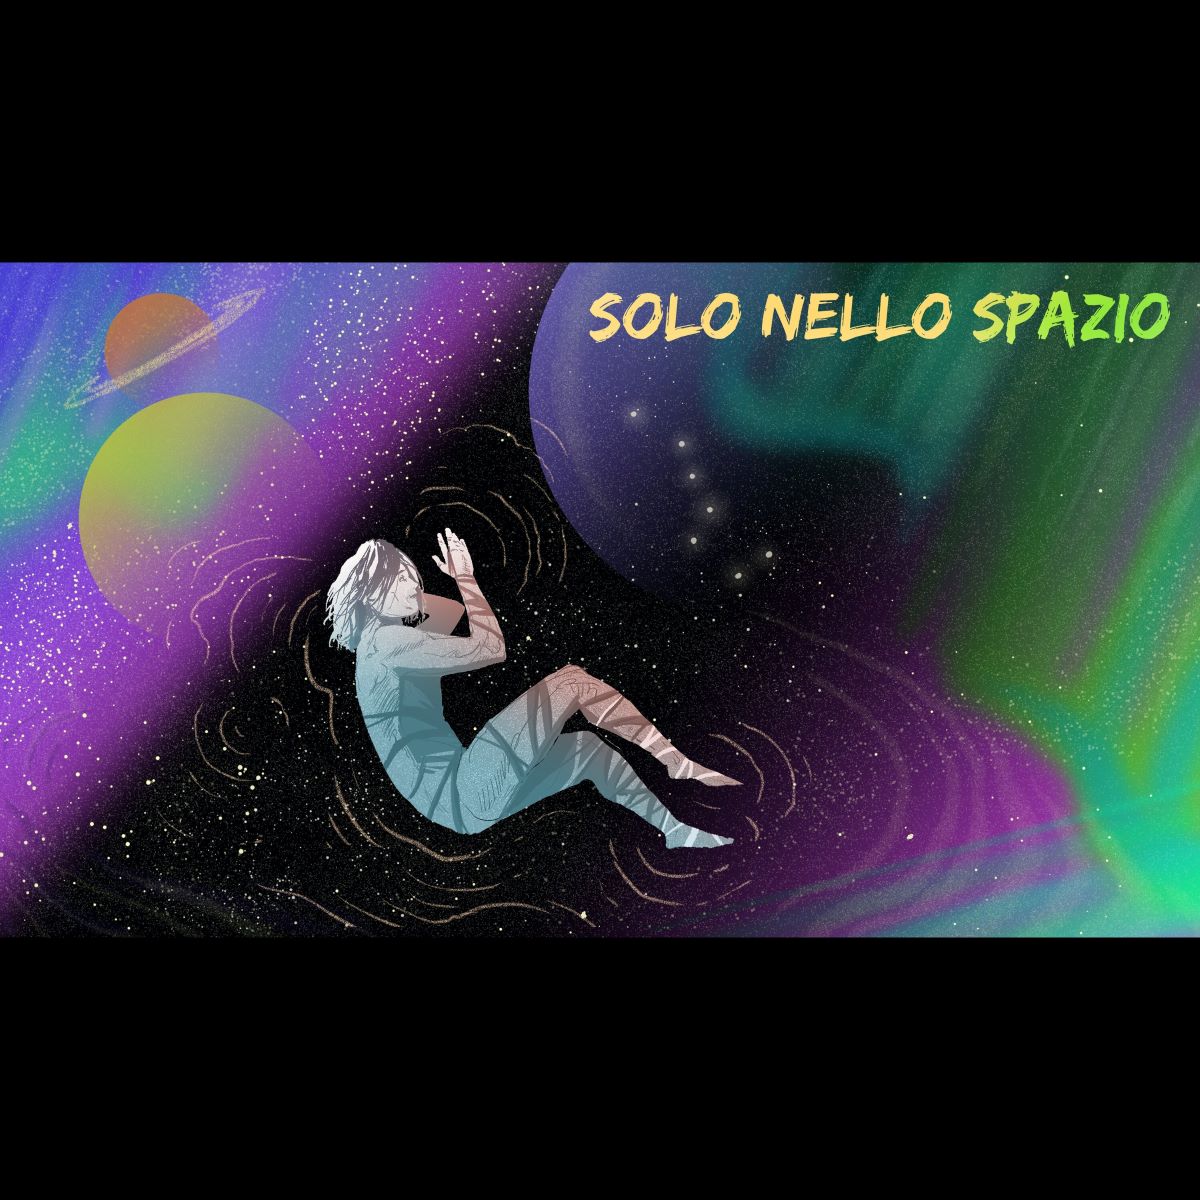 Aldo Losito - Il nuovo singolo “Solo Nello Spazio”